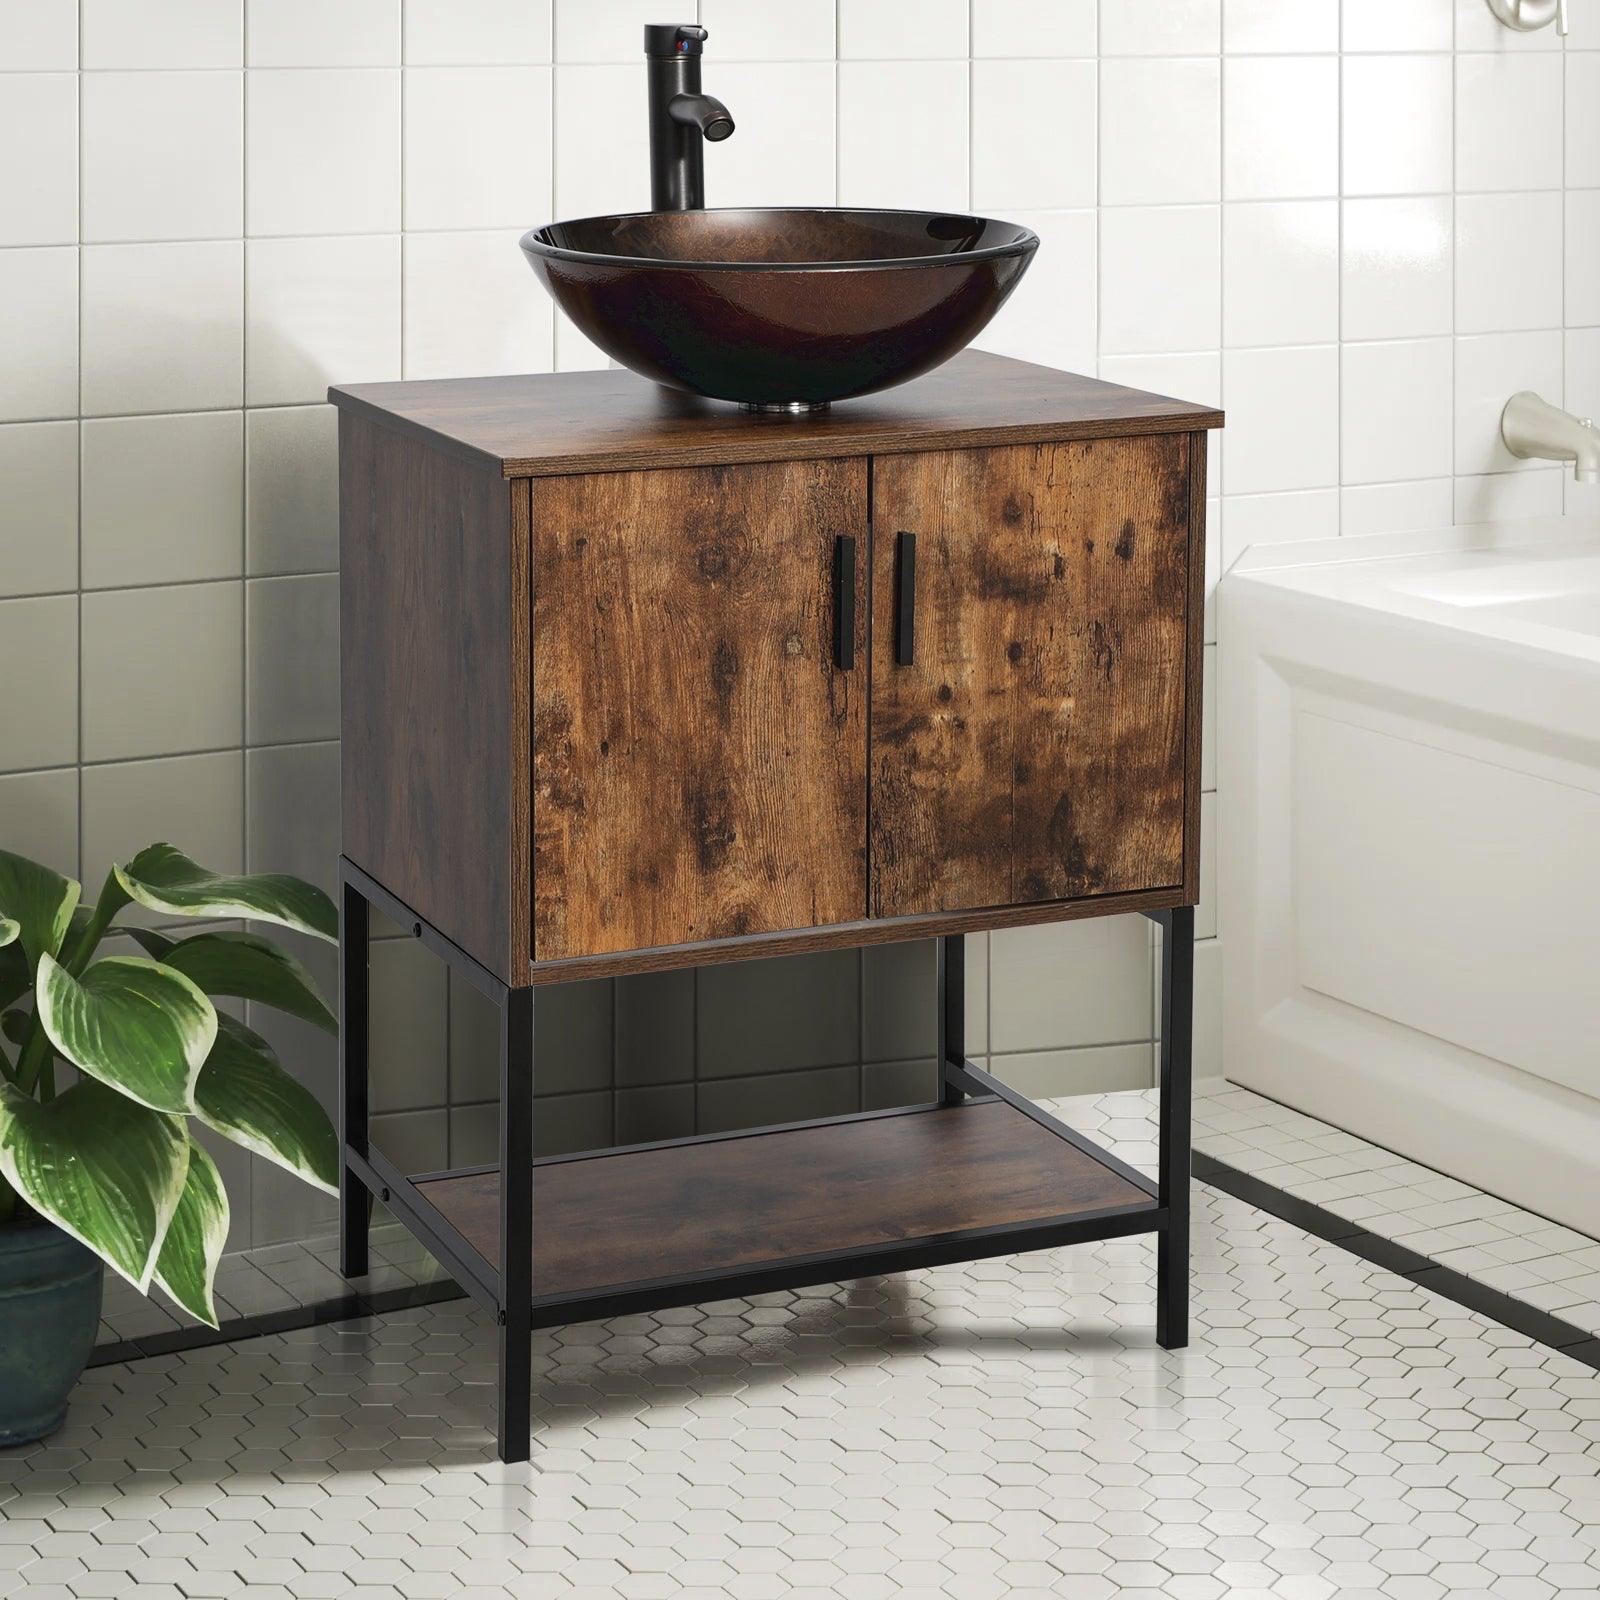 Eclife 24“ Wood Brown Double Door Bathroom Vanity